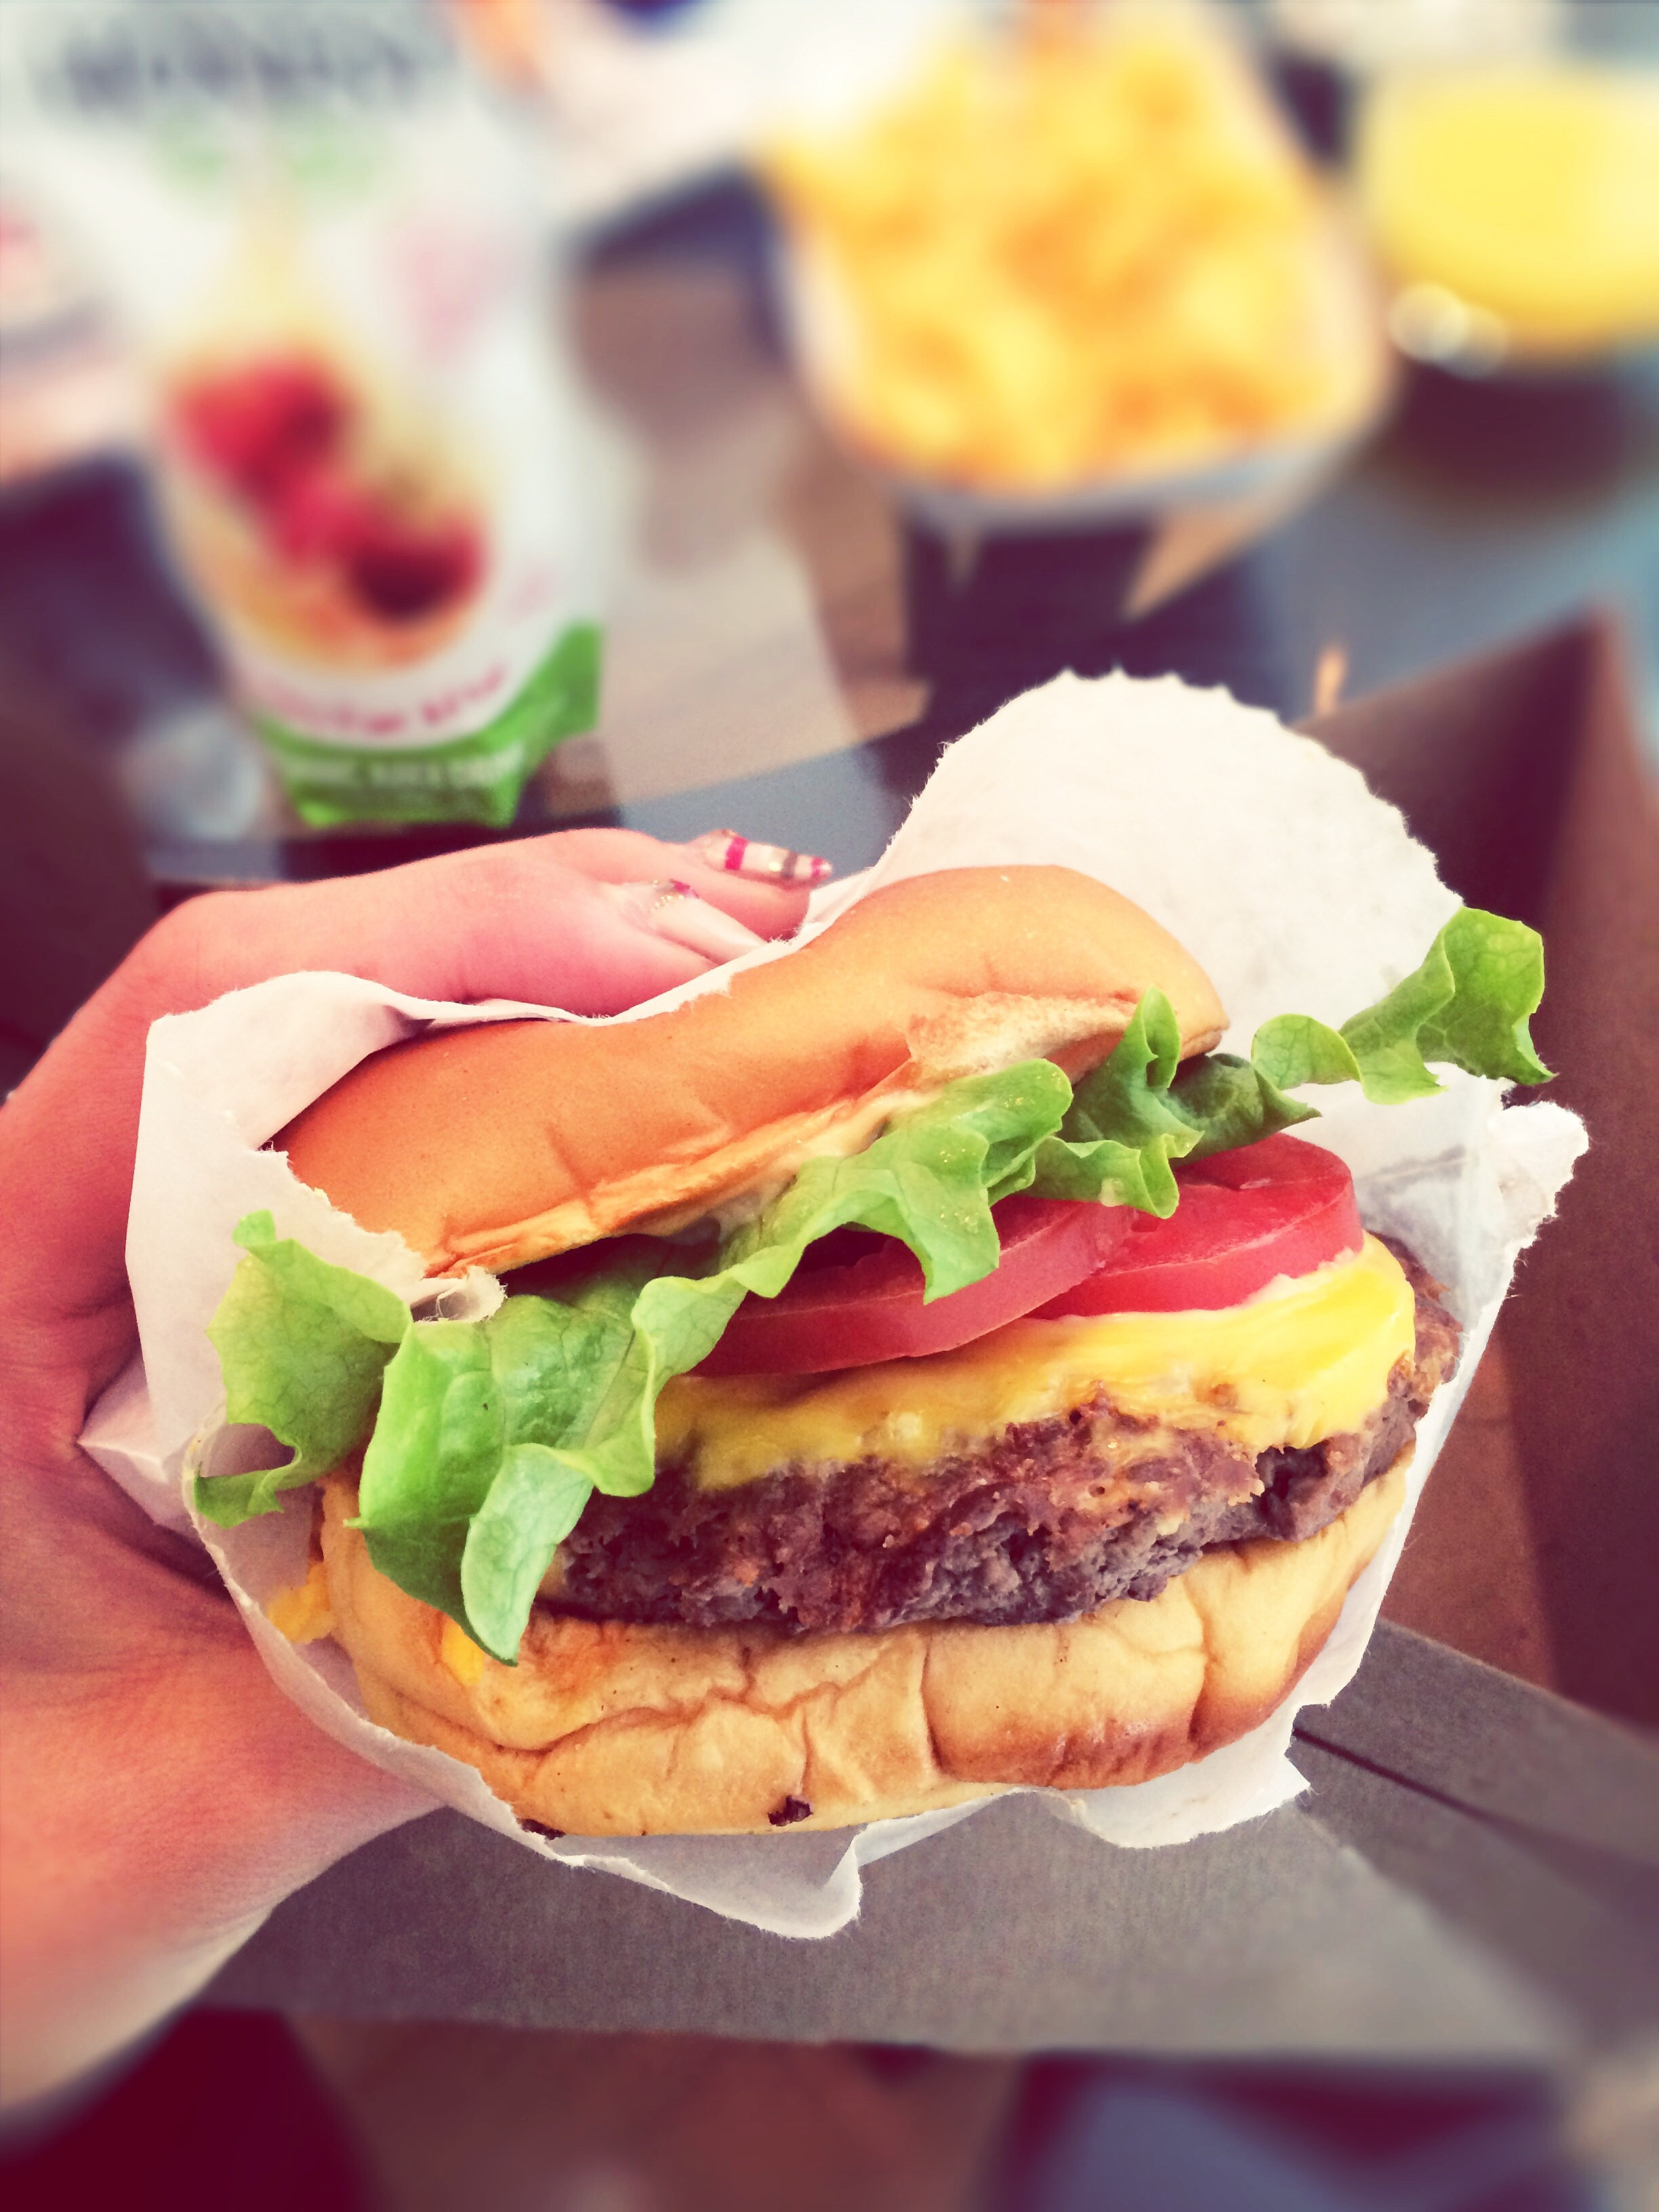 A hand holding a burger.